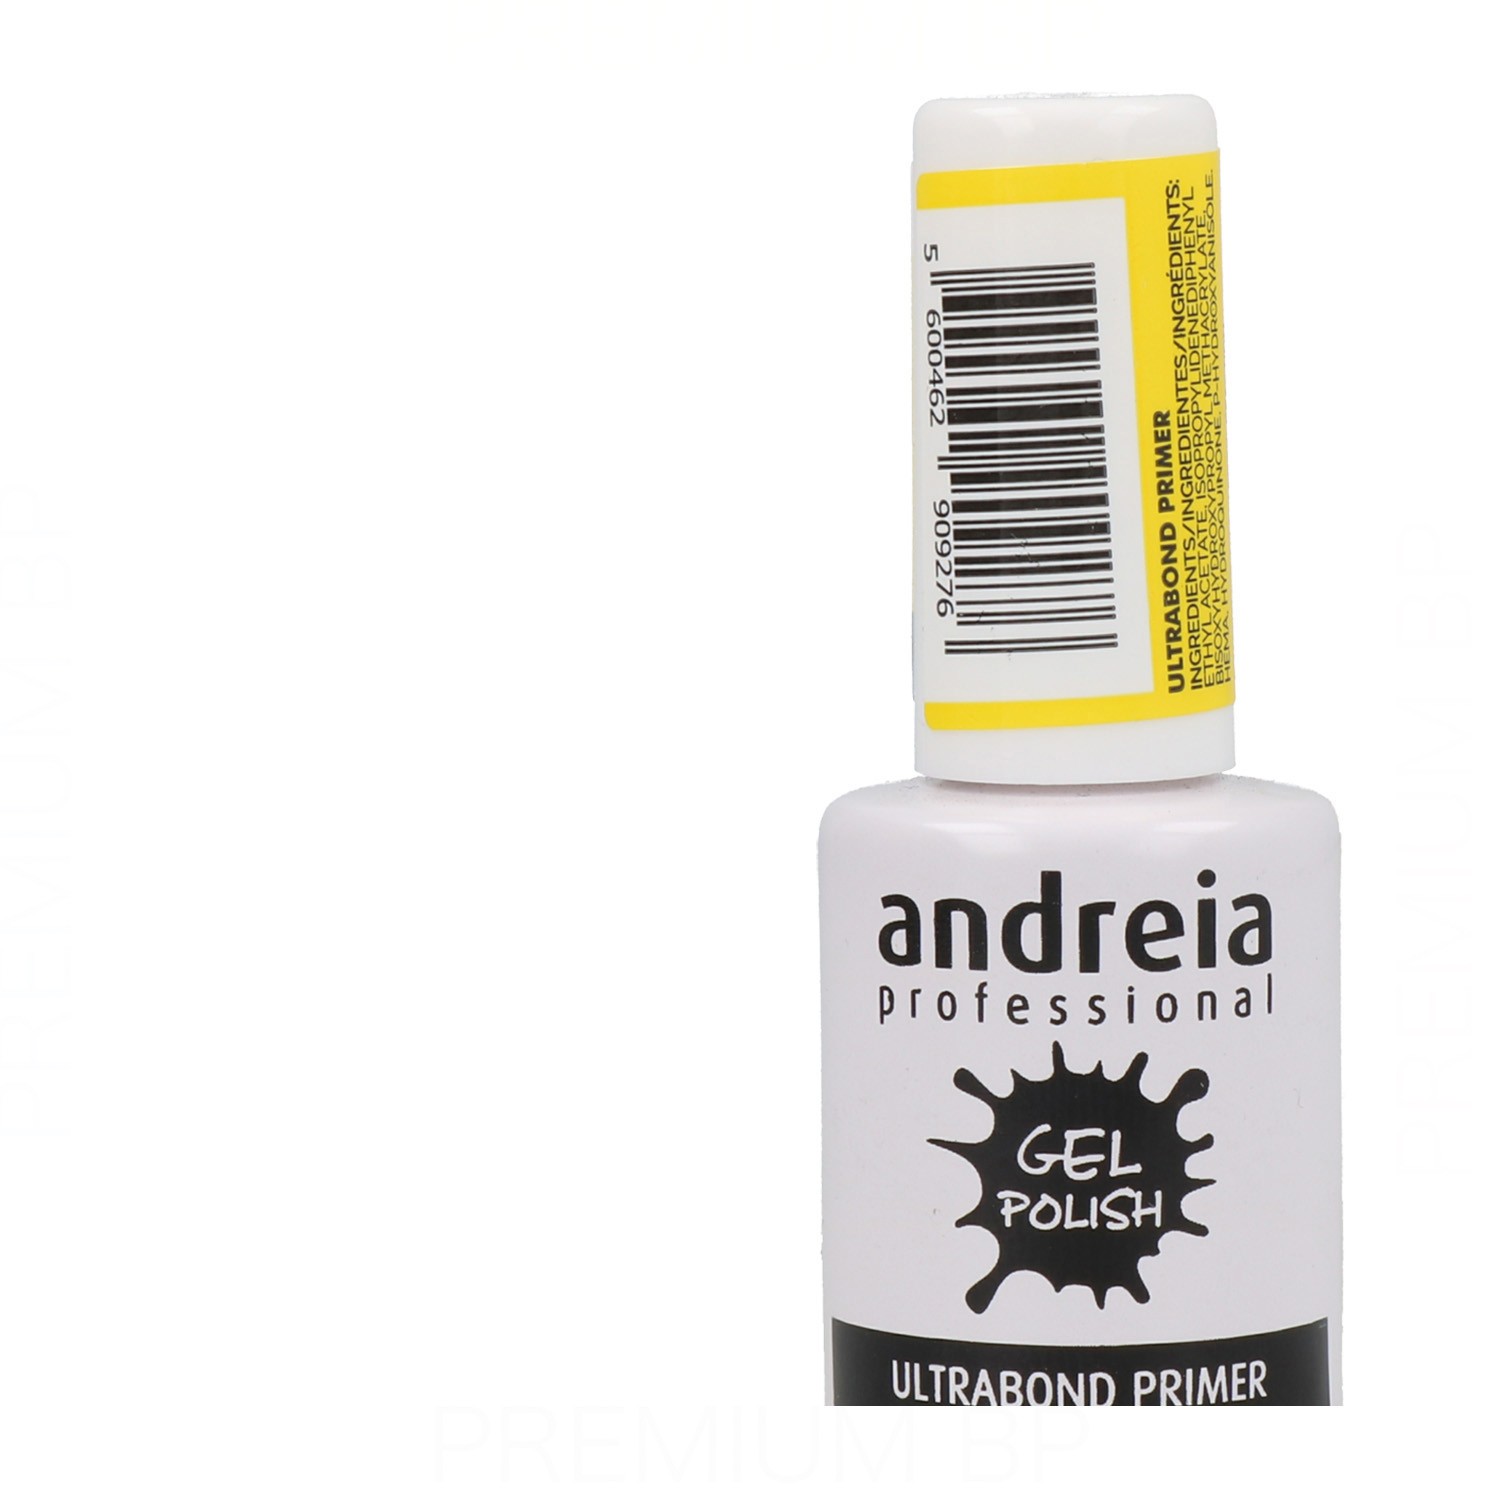 Andreia - Andreia professional gel polish ultrabond primer 10,5 ml,  Belleza y cuidado de tu cabello y tu piel con Andreia.